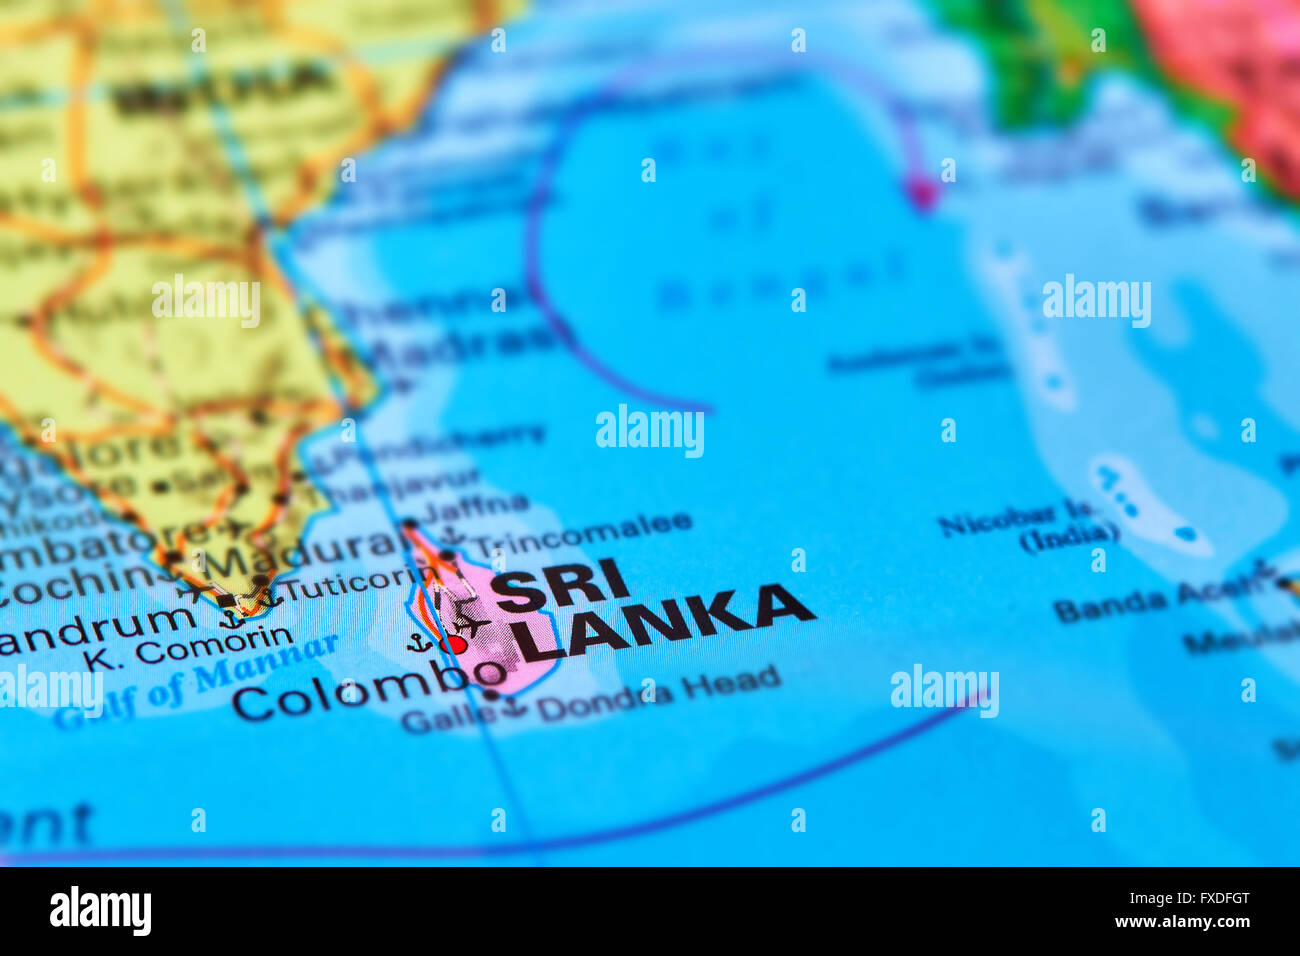 Шри ланка положение. Шри Ланка Цейлон на карте. Карта Шри Ланка с соседними государствами.